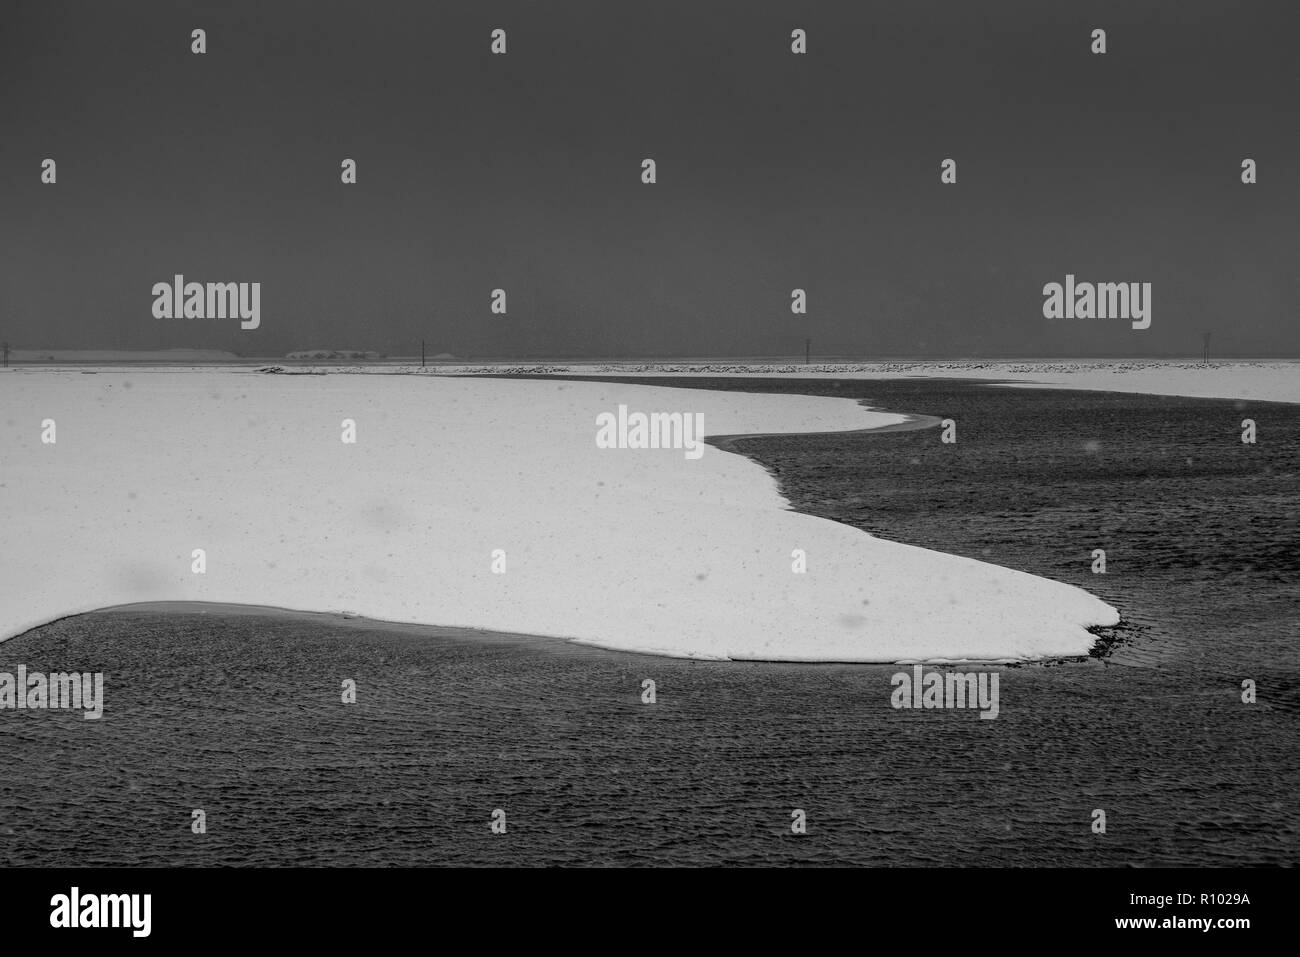 Amazing Island im Winter - eine atemberaubende Landschaft und gefrorene Landschaften - unglaubliche Schwarz-weiß Bilder aus Ikonischen Standorte Stockfoto